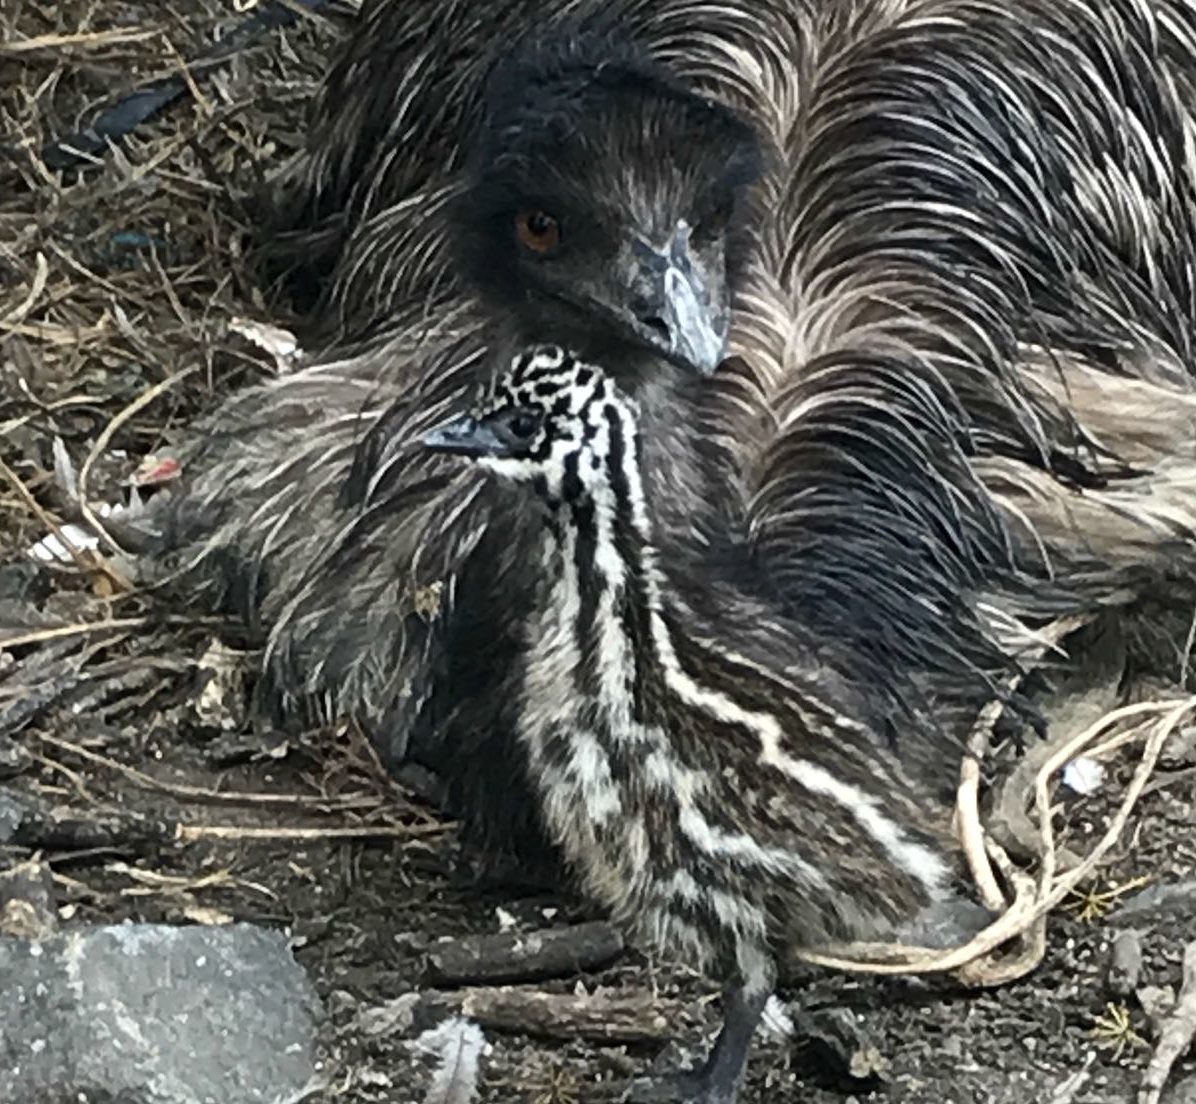 Baby emus born at The Buffalo Farm